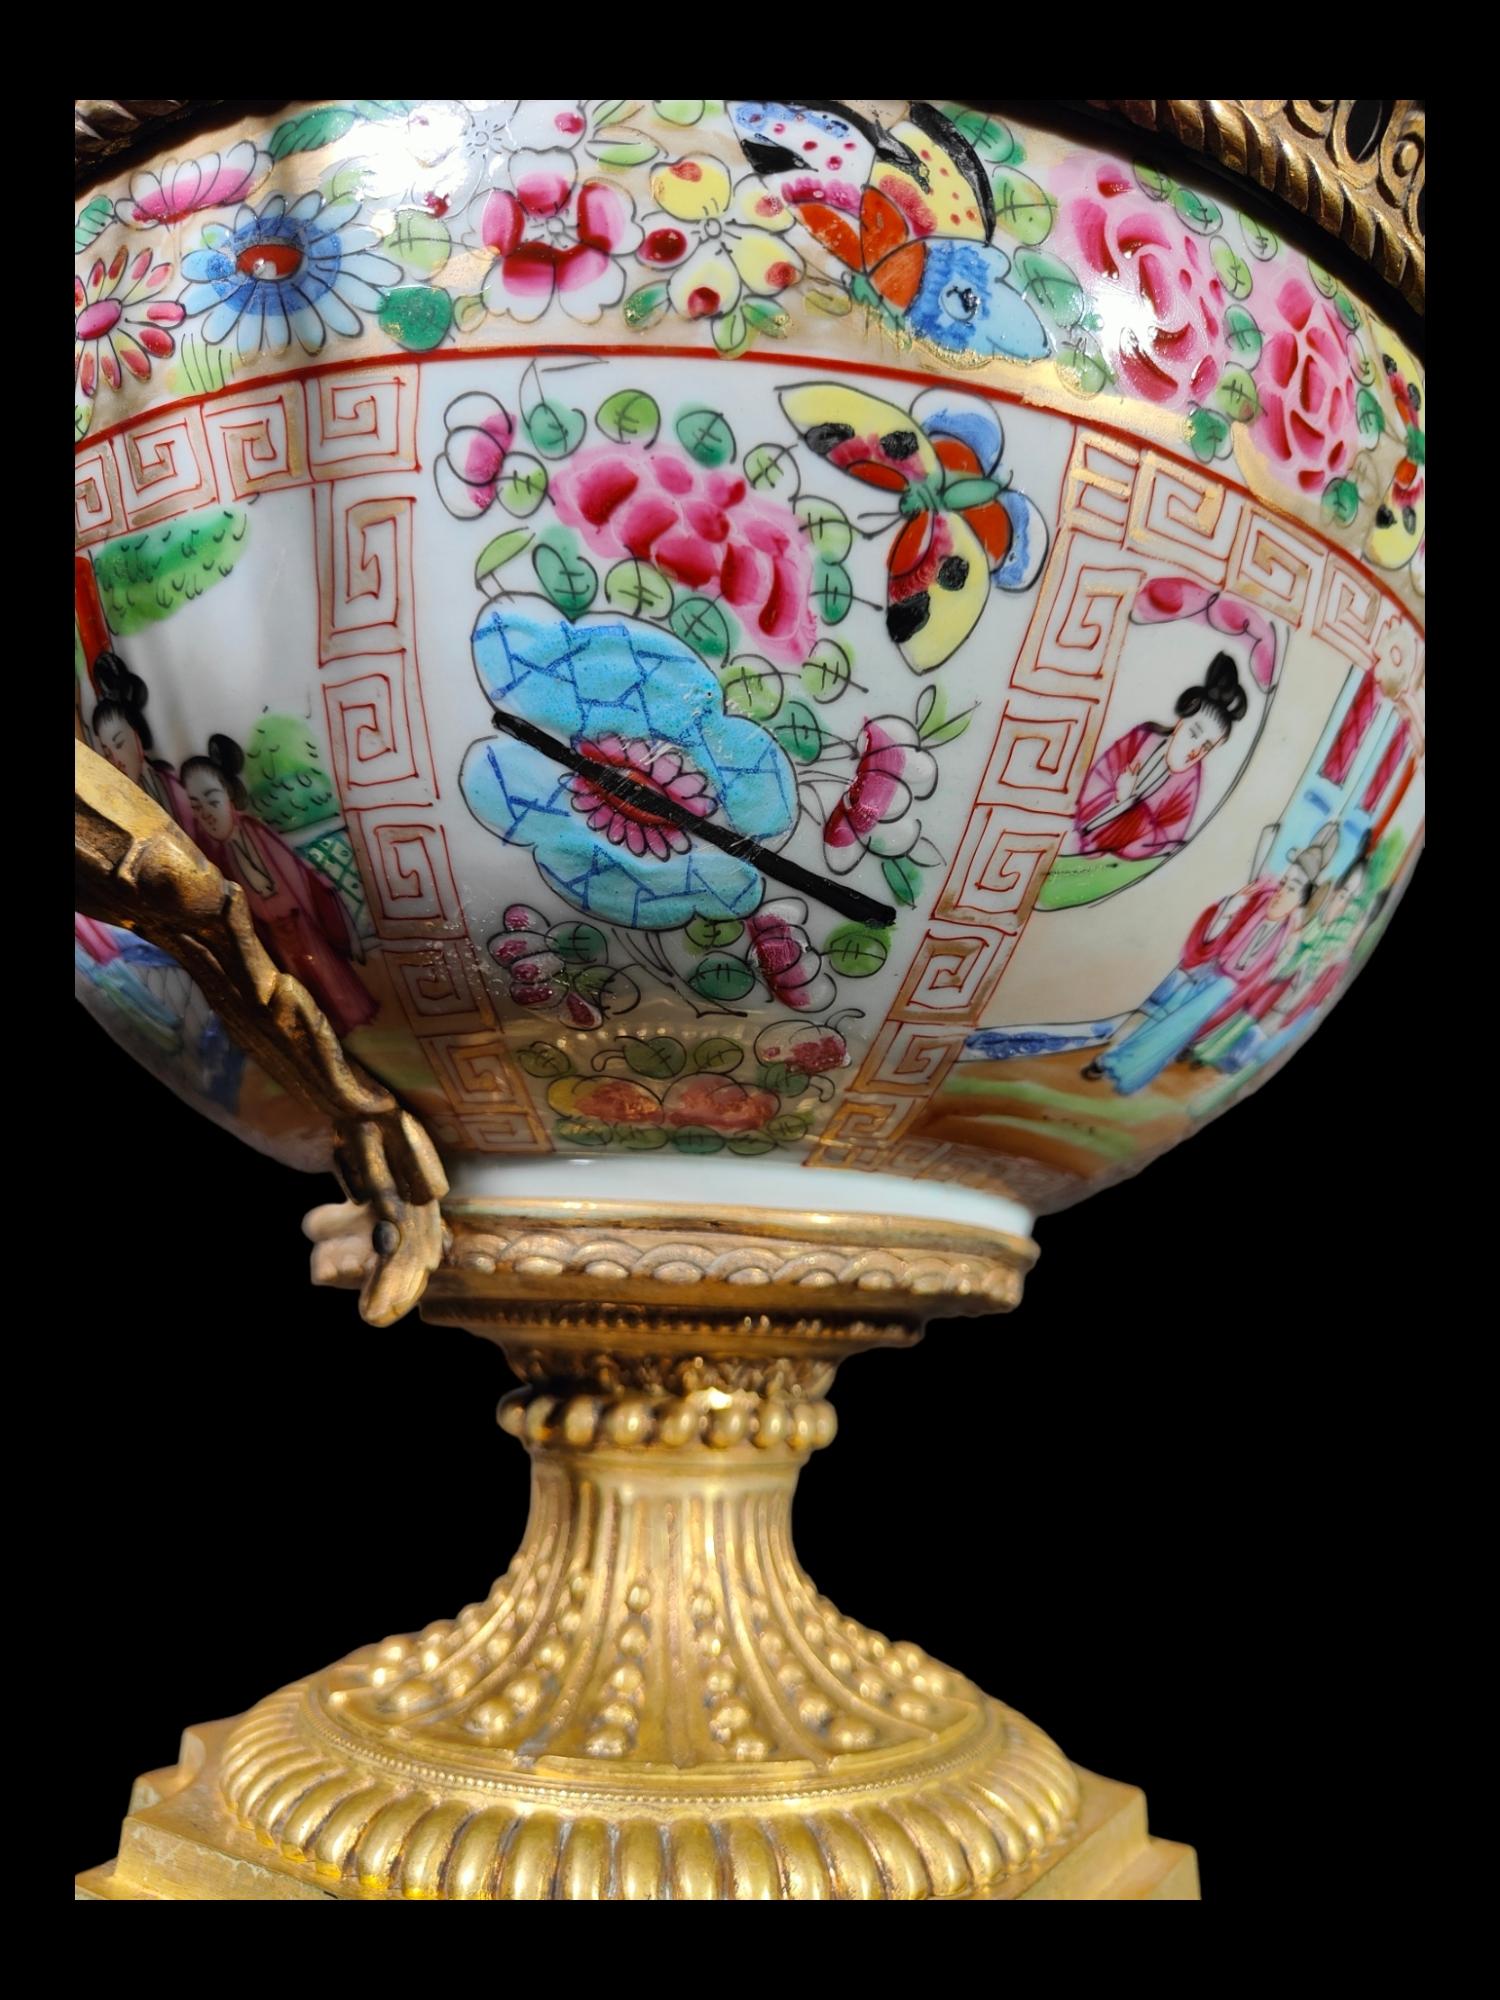 Chinesische Porzellan-Punschschale 19. Jahrhundert
Große chinesische Porzellanschale für den Export, in Goldbronze gefasst, aus dem 19. Jahrhundert. Das Porzellan ist in ausgezeichnetem Zustand ohne Brüche oder Fehler. Maße: 42x34x32 cm.